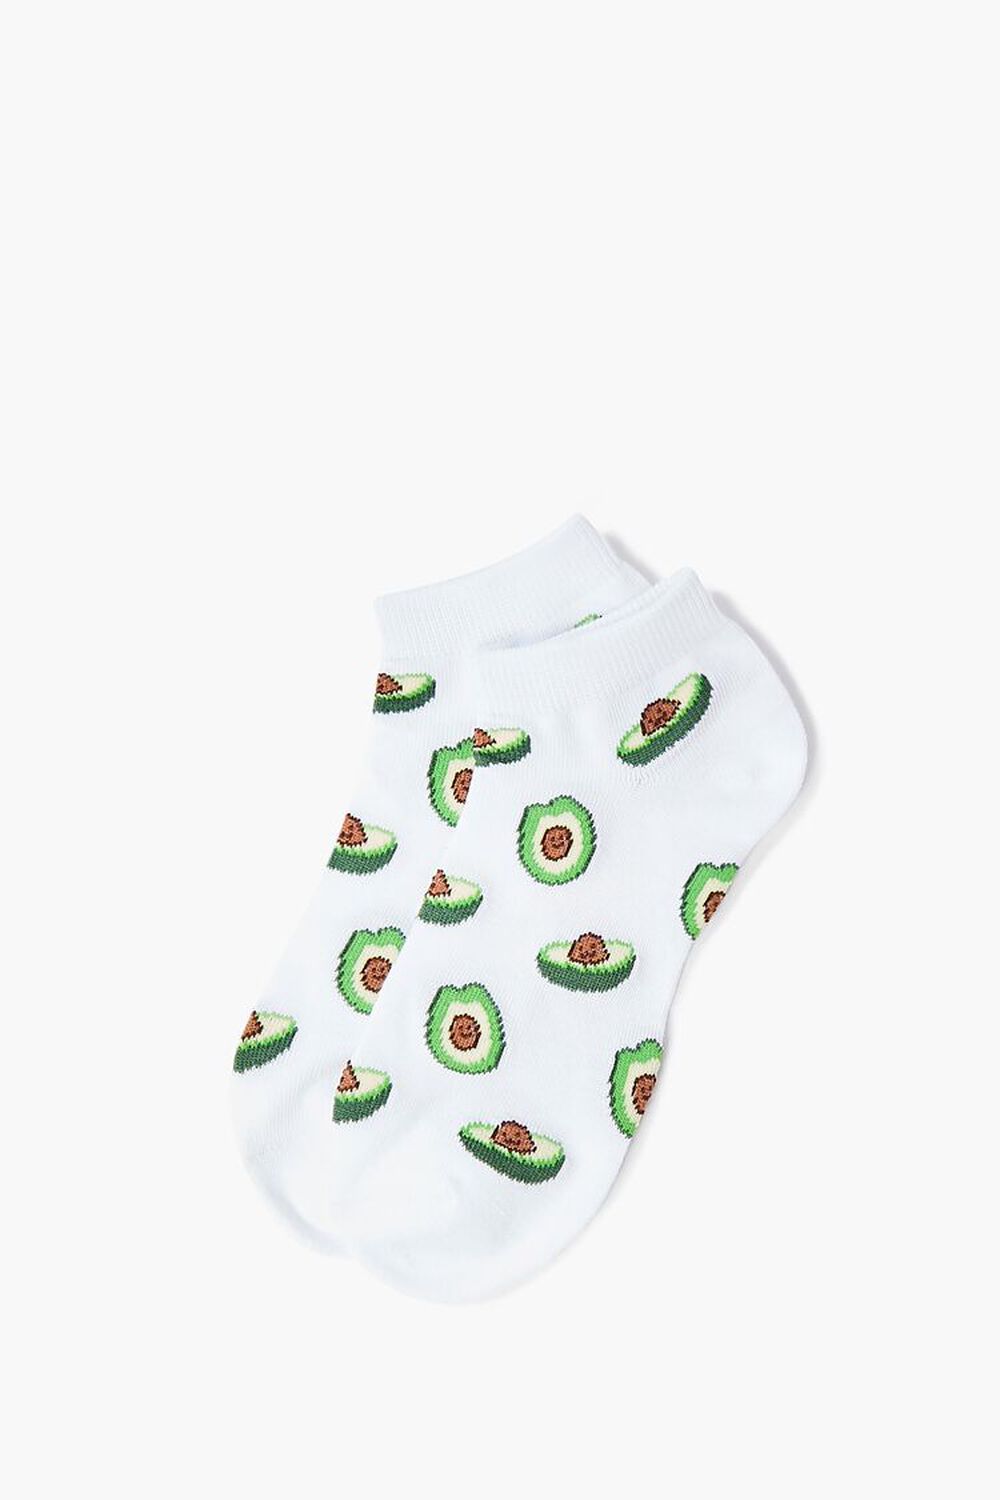 Avocado Print Ankle Socks, image 1